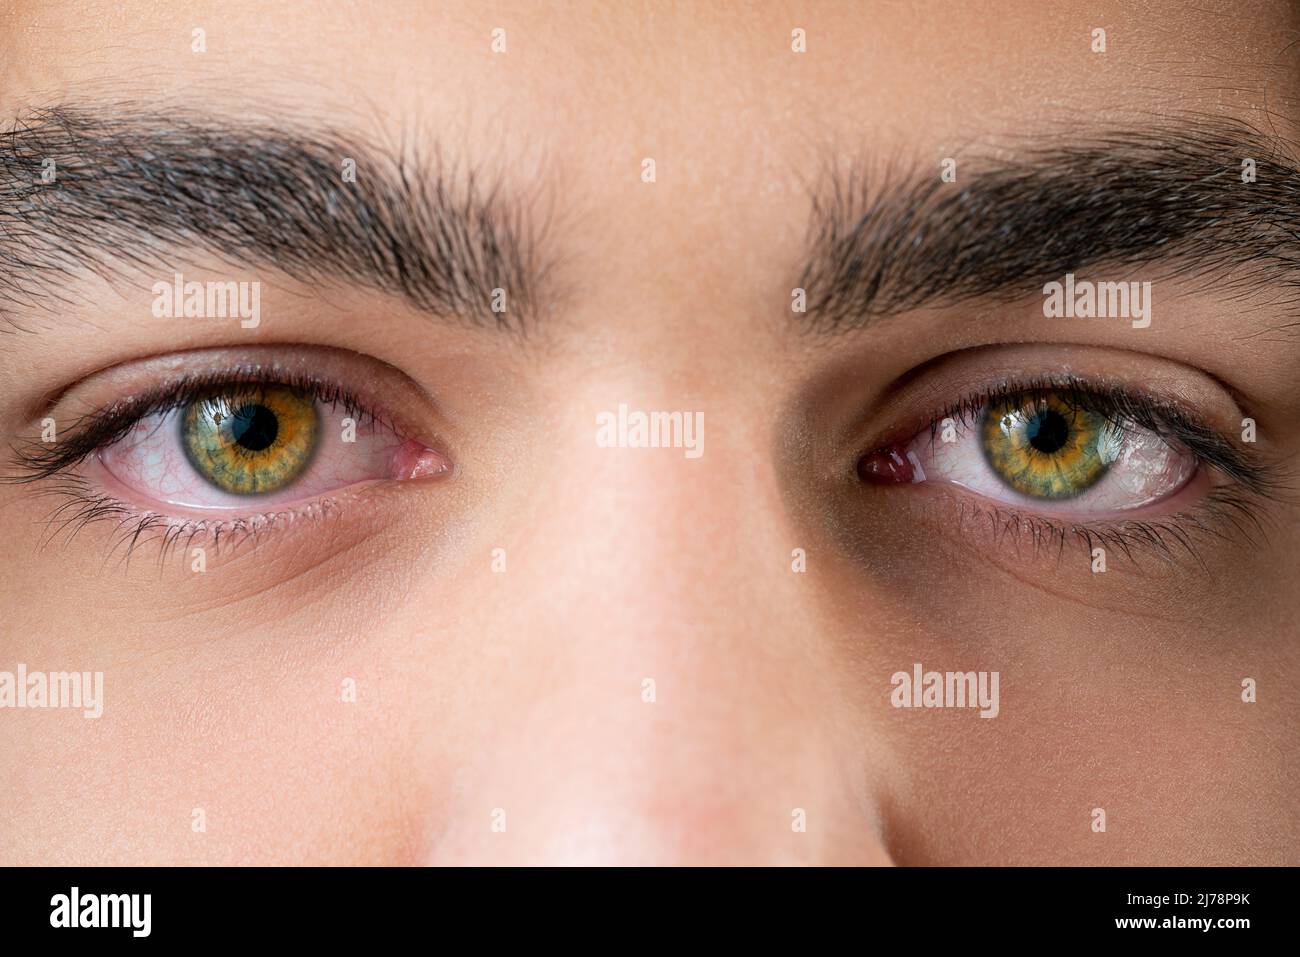 Primer plano, foto macro de un ojo coloreado, iris, pupila, pestañas de ojos, tapas de ojos. Fotografías de alta calidad Foto de stock